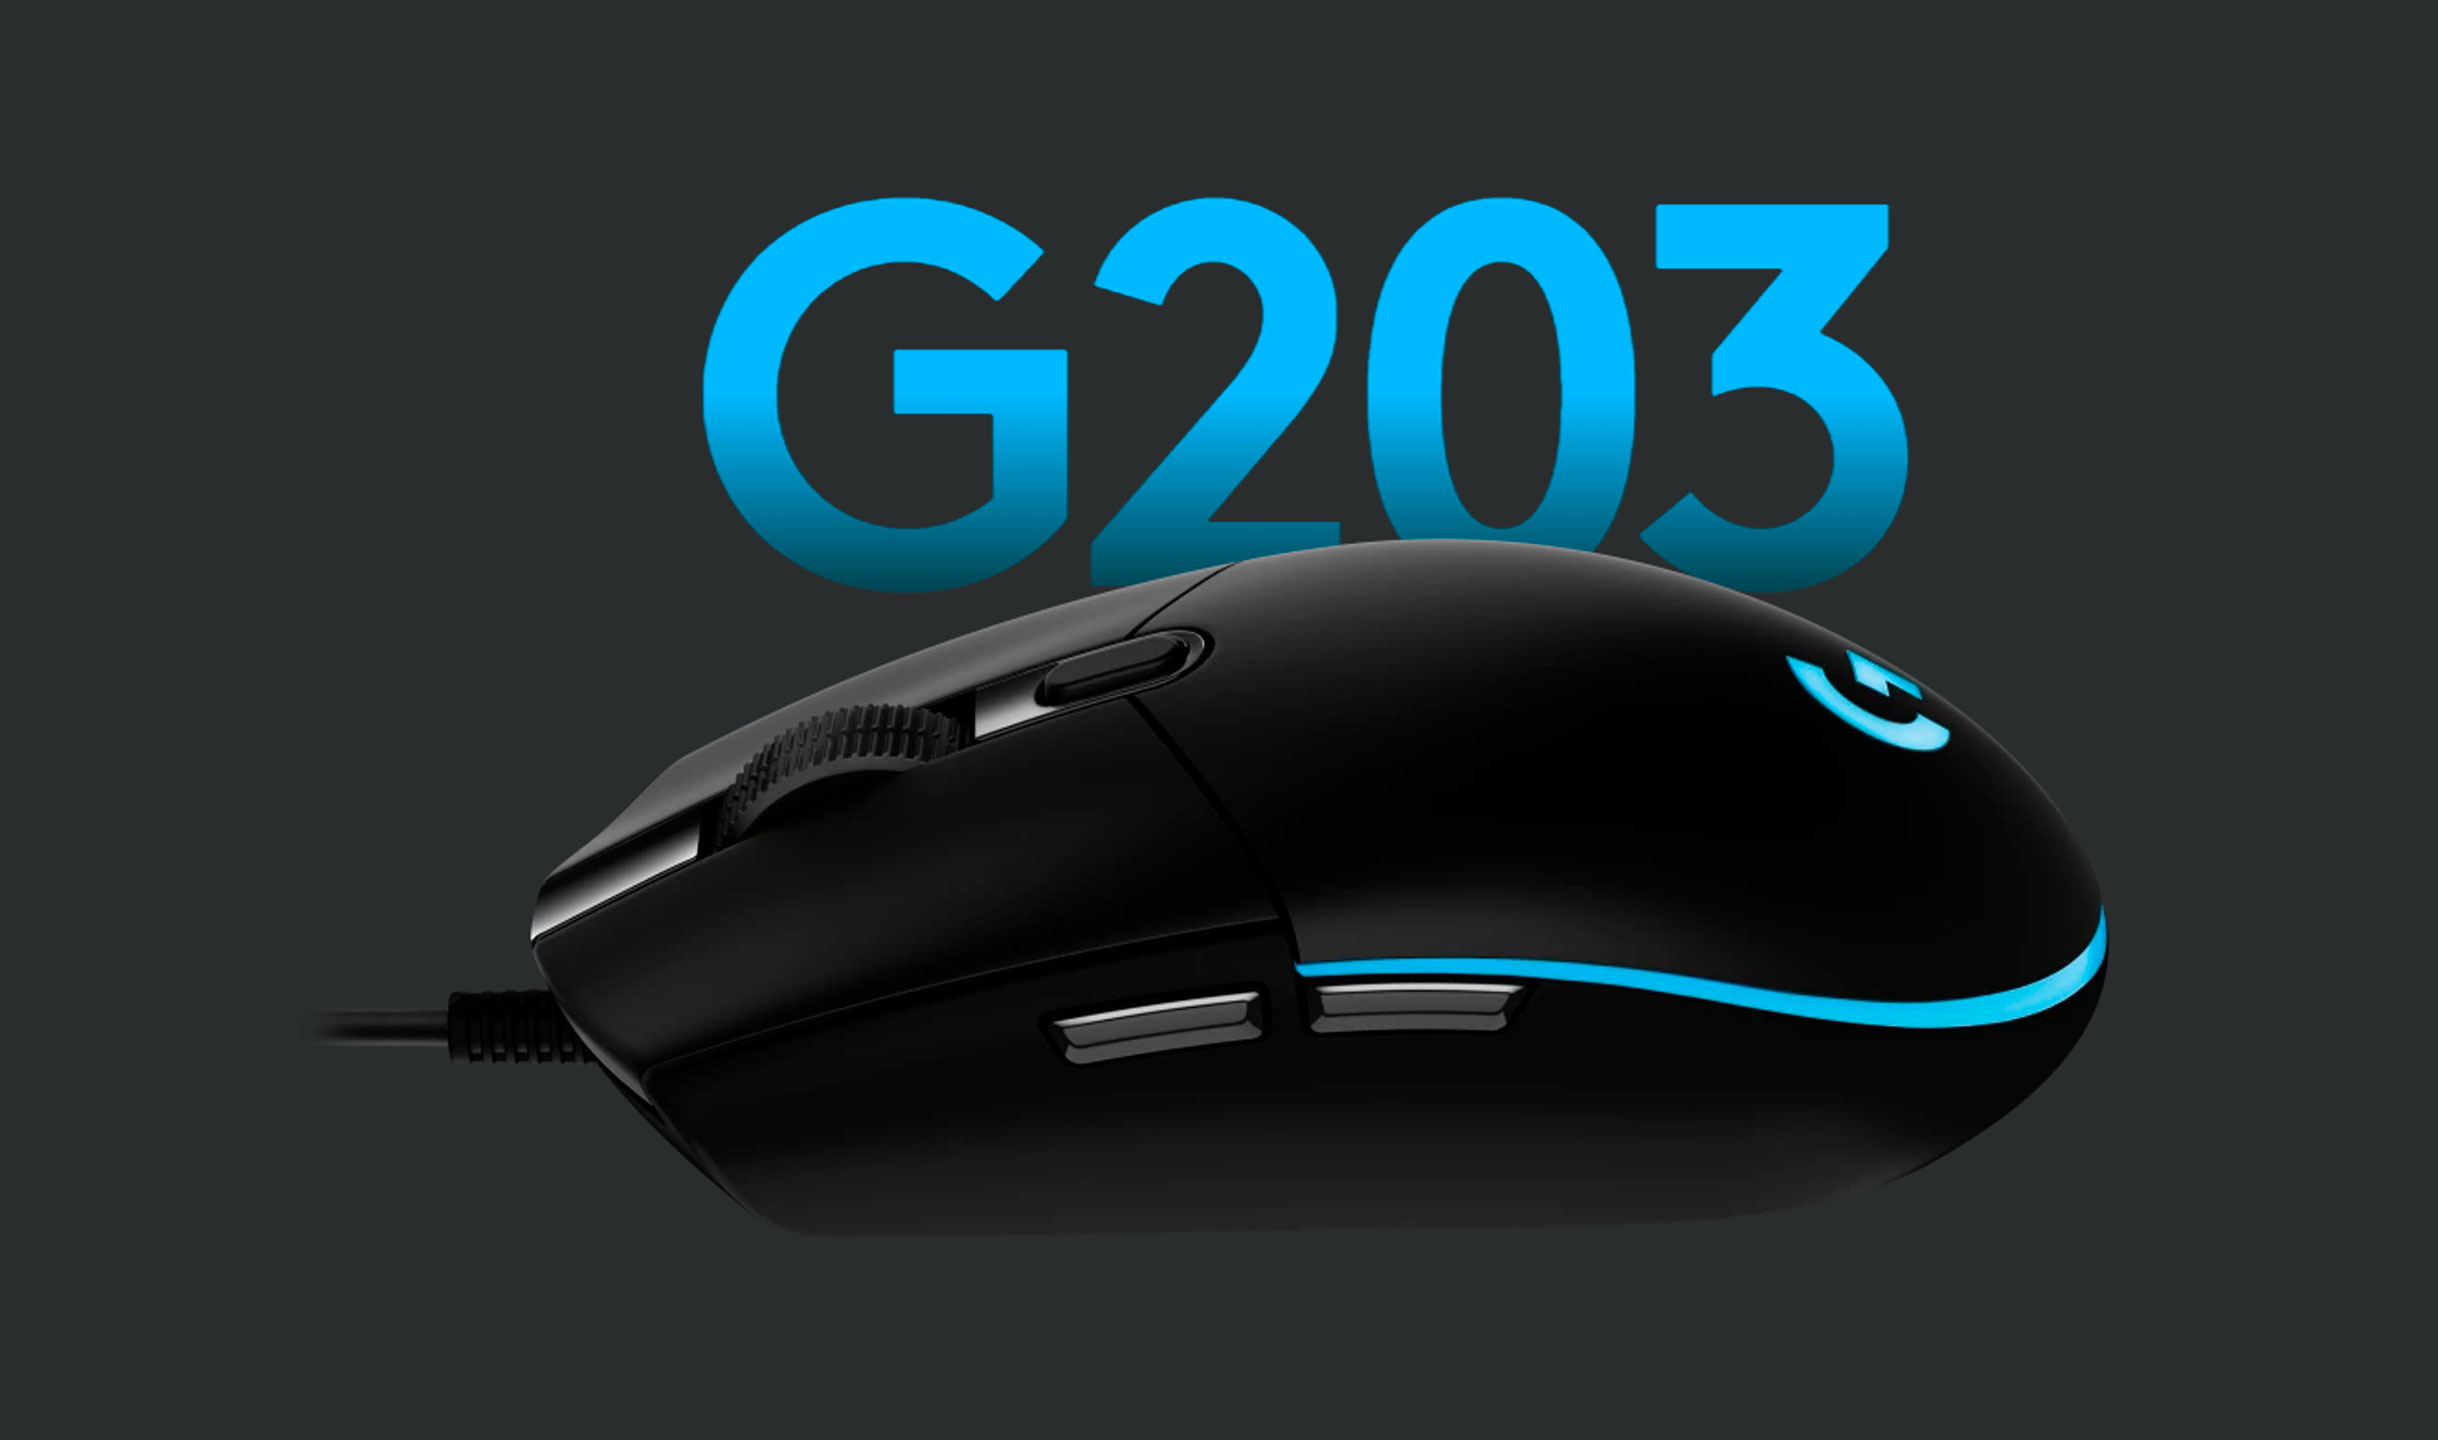 Mouse Gamer Logitech G203 USB